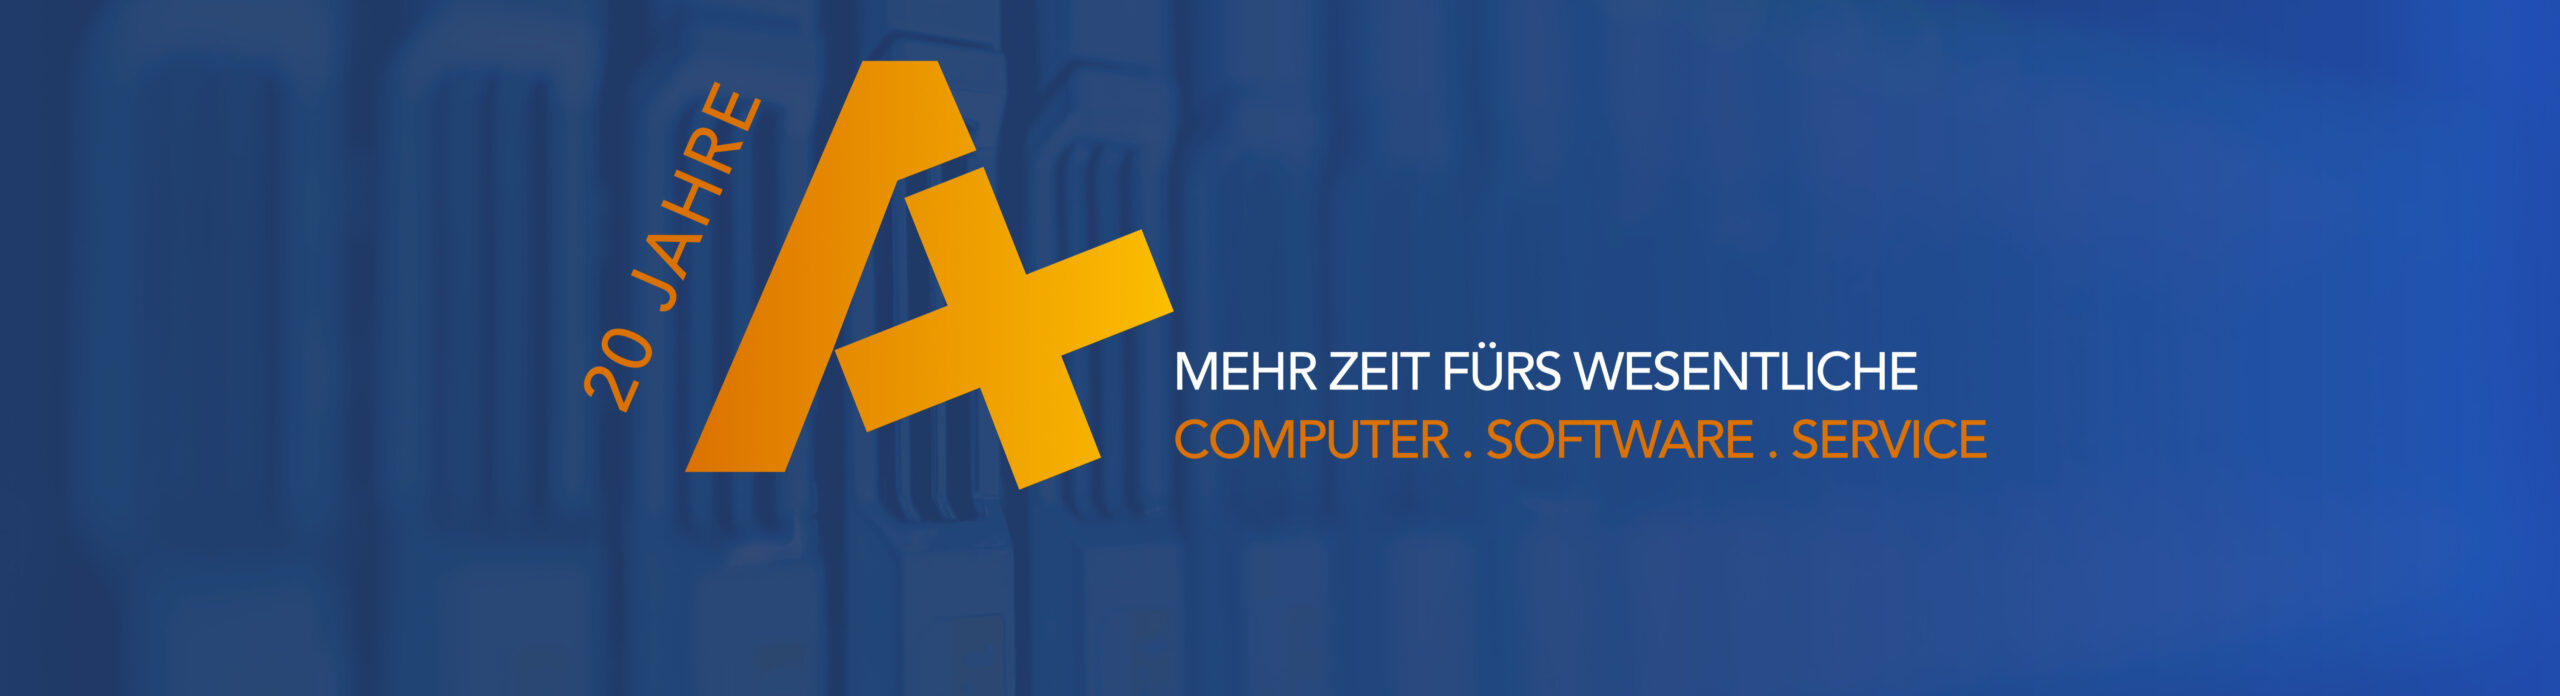 20 Jahre A+ GmbH IT-Dienstleister Logo mit Claim - Mehr Zeit fürs Wesentliche und Leistungsaufzählung - Computer - Software - IT-Service